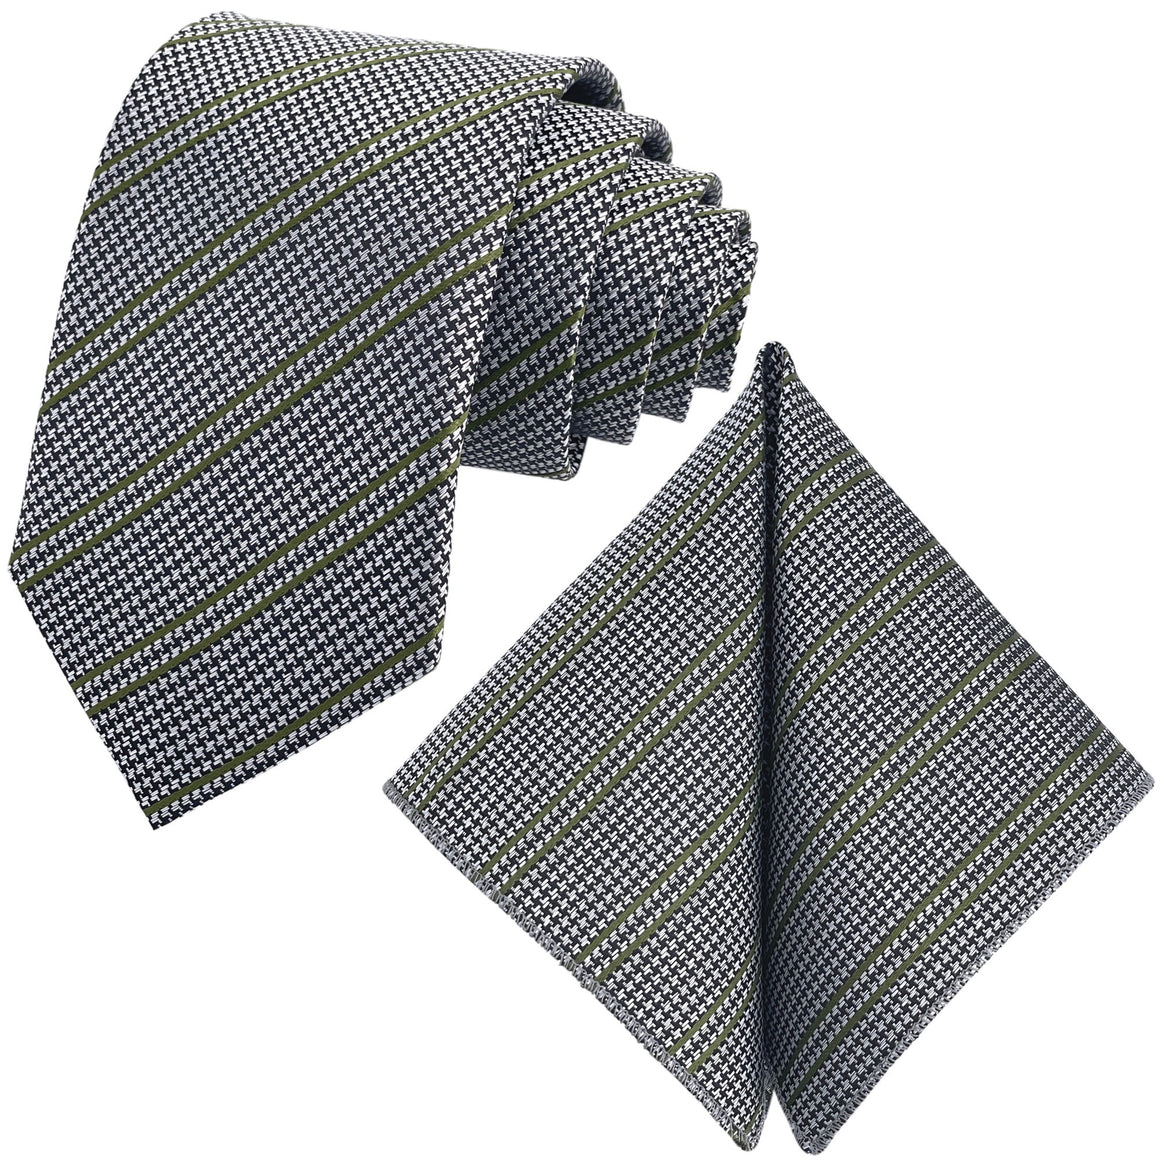 GASSANI 2-SET Krawattenset, Krawatte 8cm Schmal Hahnentritt-Muster Gestreift, Silber-Olivgrün Extra Lange Jacquard Herren-Krawatte,  Einstecktuch